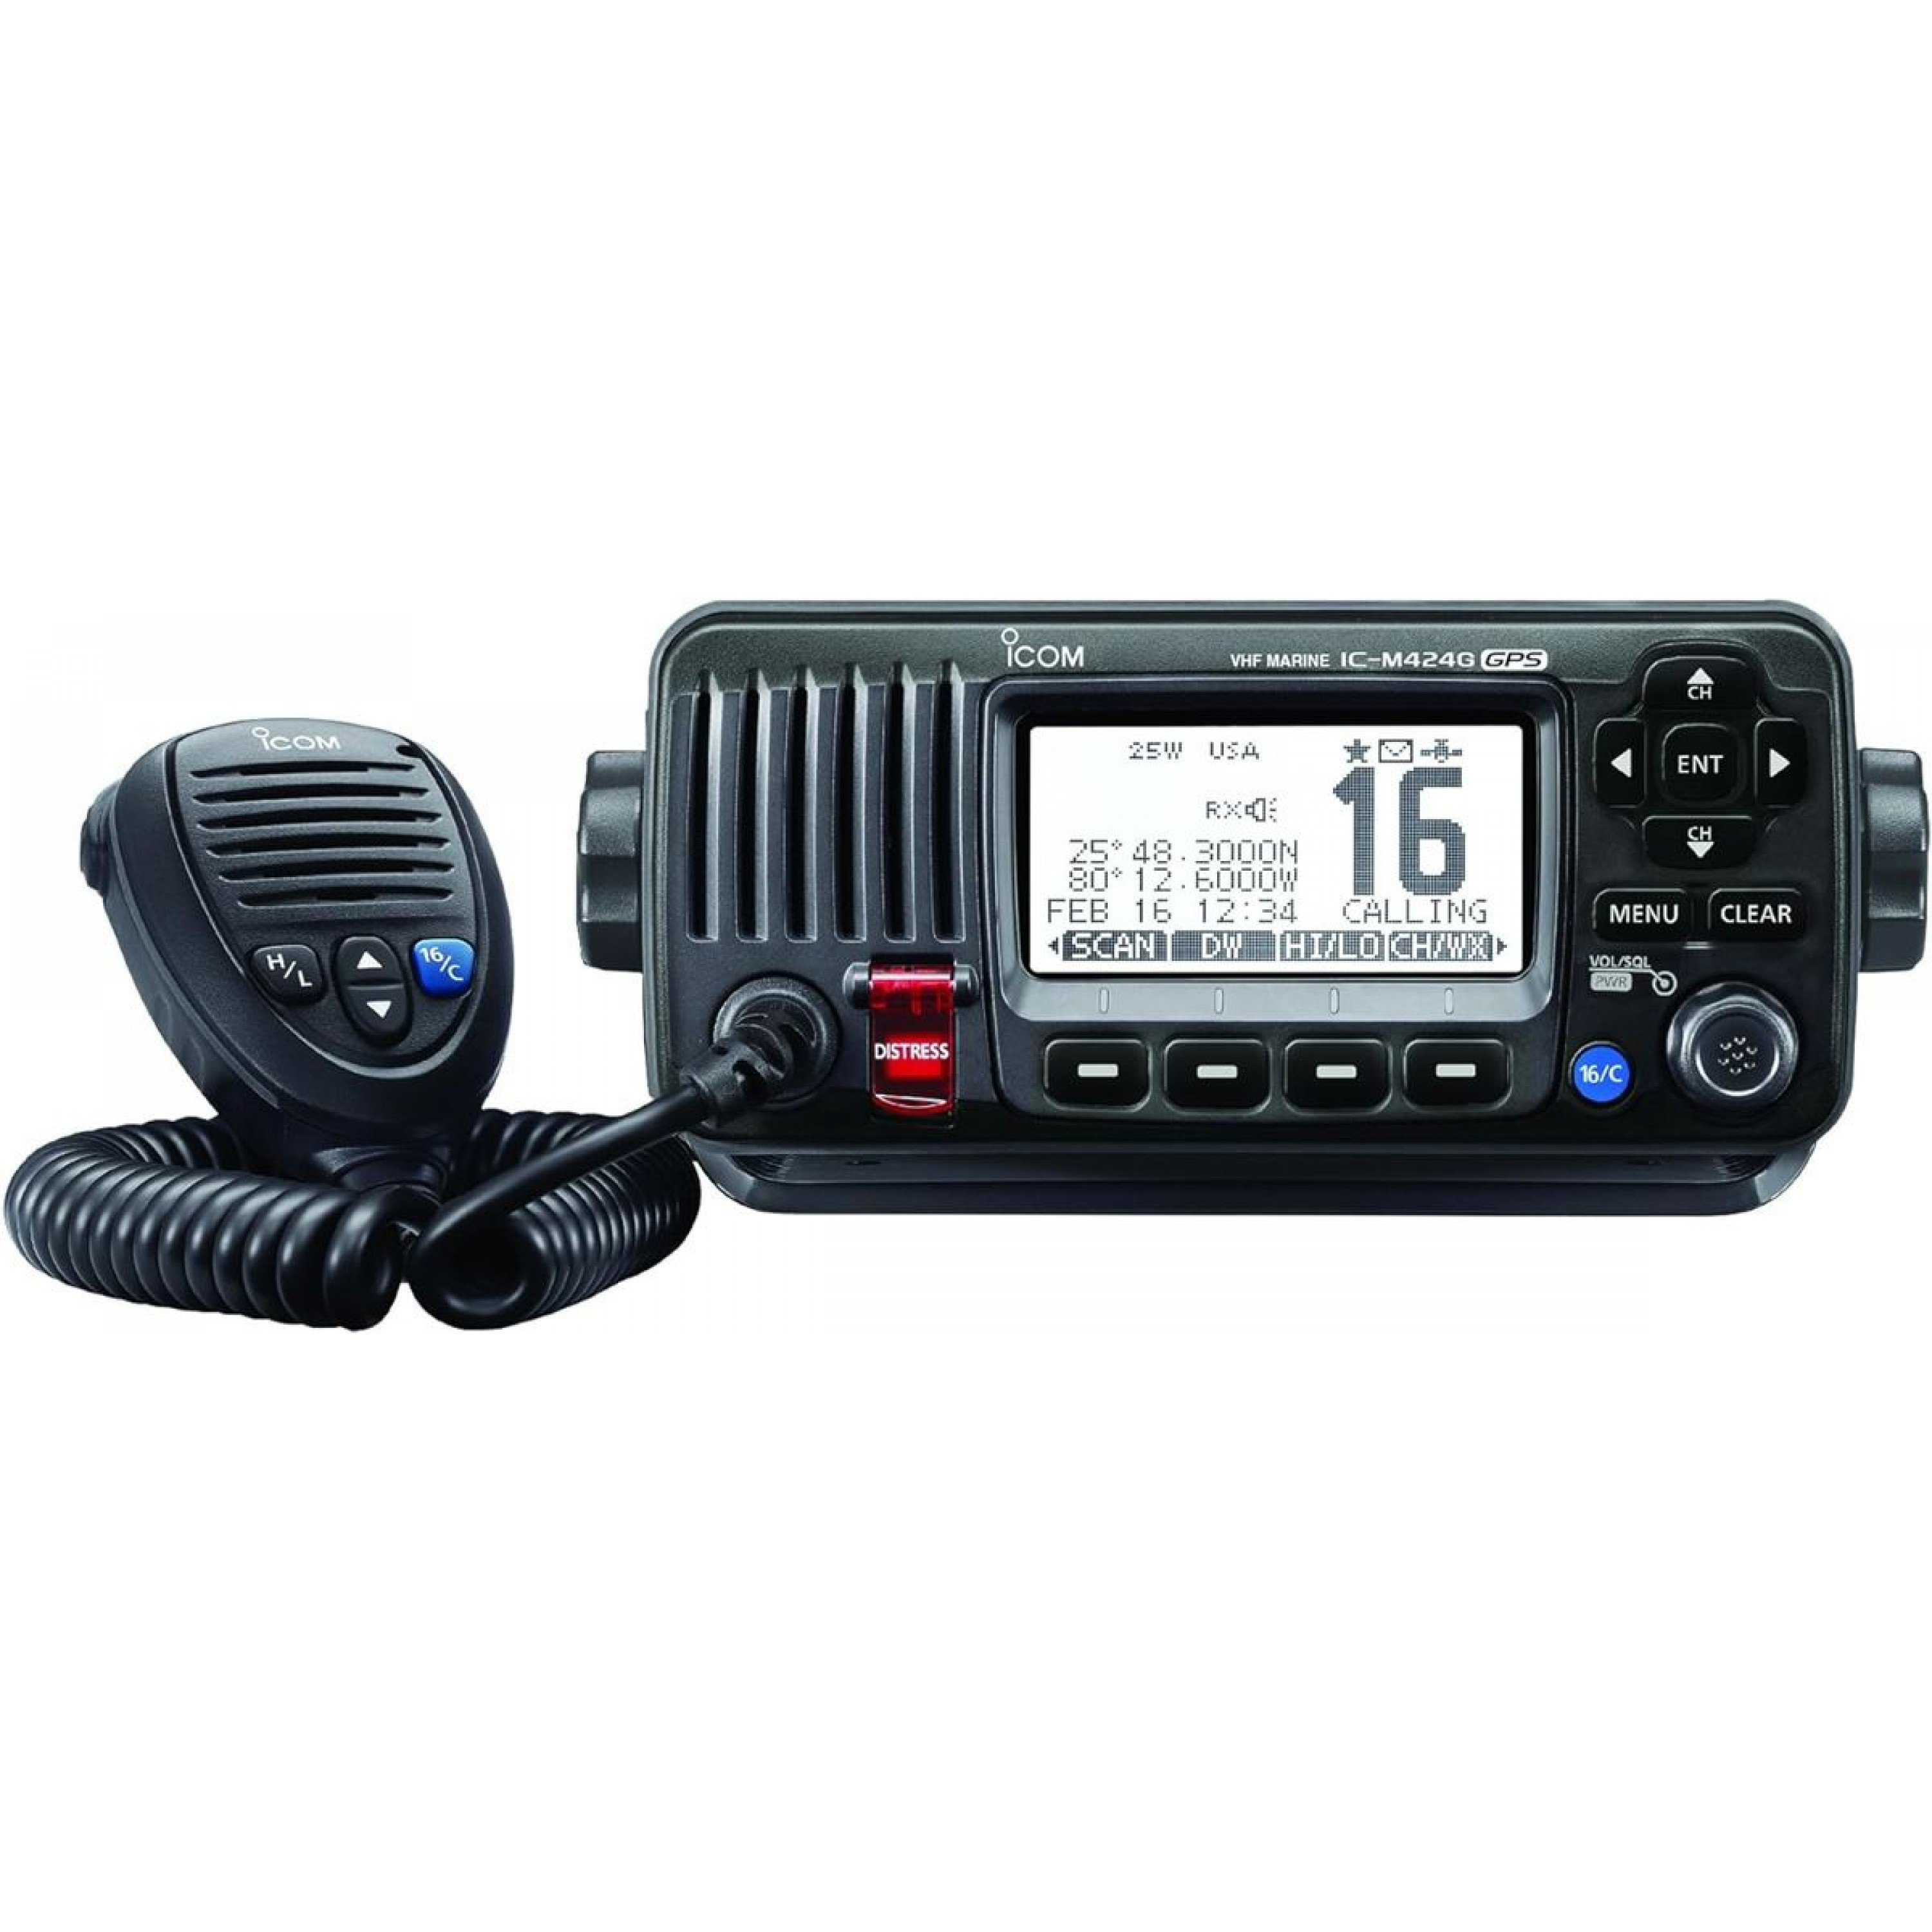 ICOM FIXED MOUNT VHF RADIO BLACK IC-M424G WITH GPS